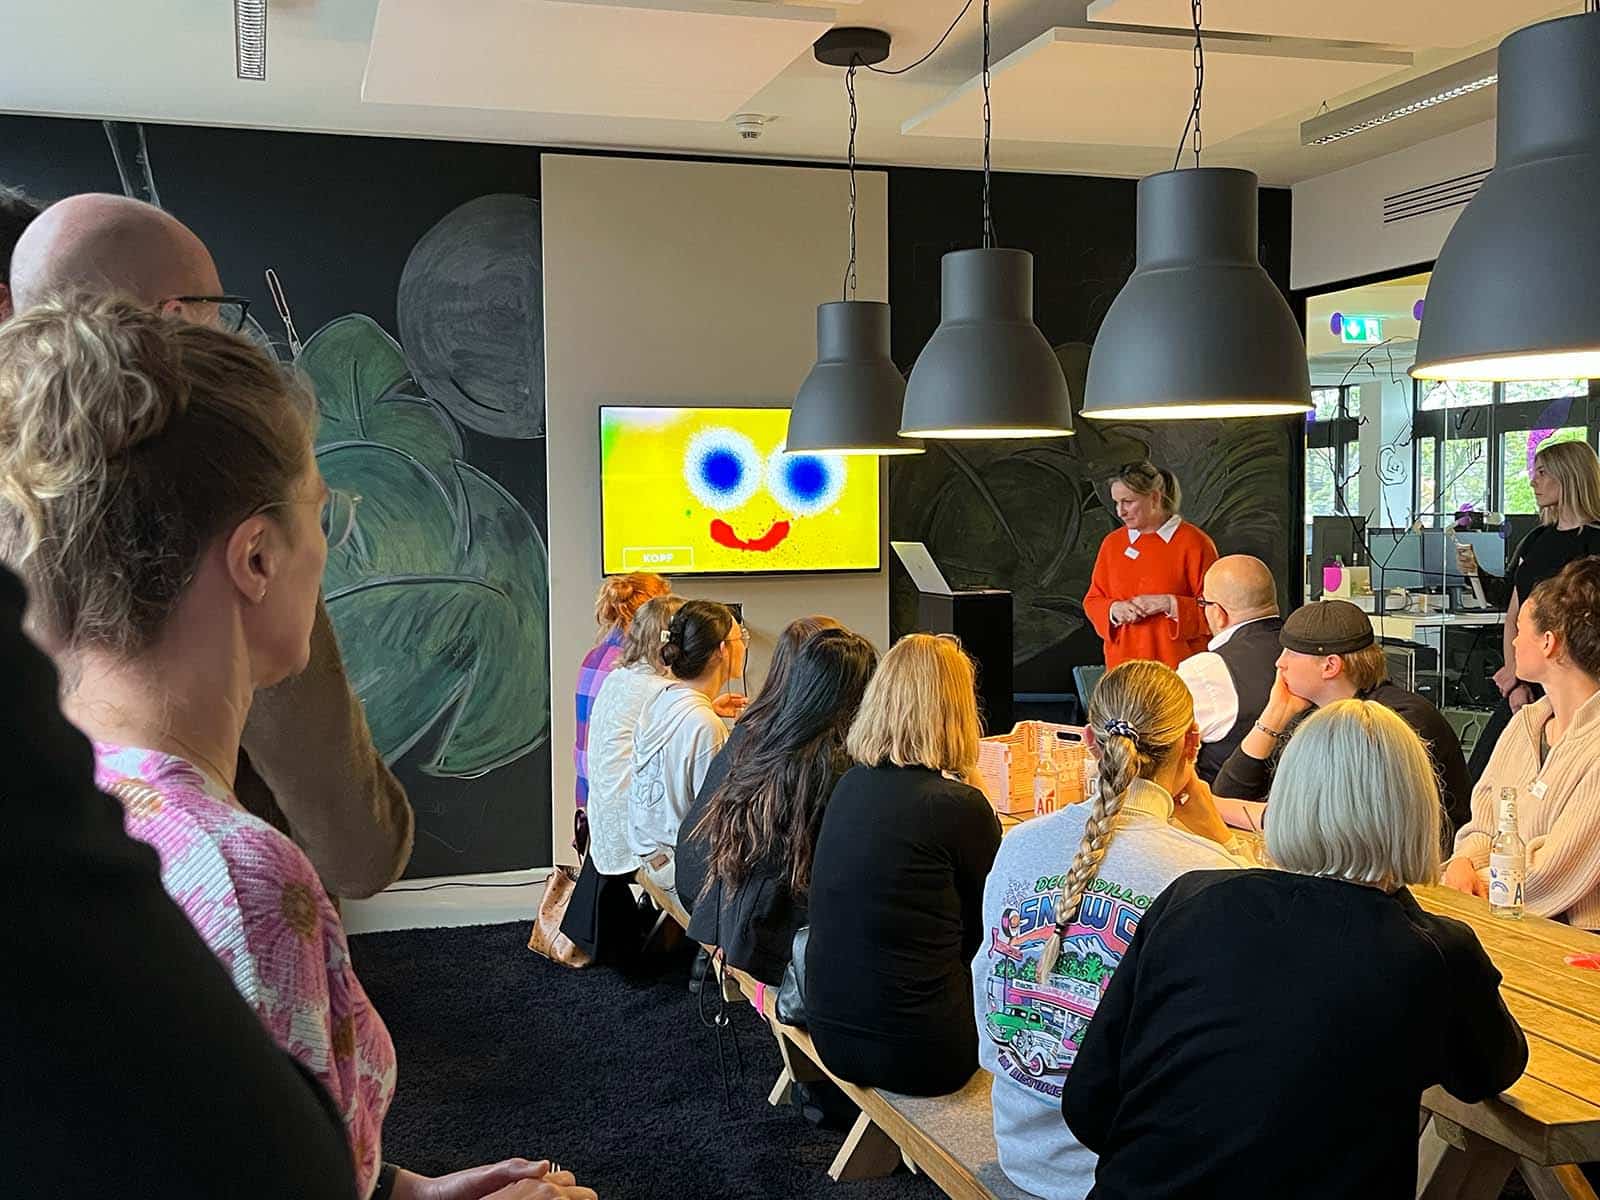 Eine Gruppe von Menschen sitzt an einem langen Tisch und hört einer Präsentation zu, die auf einem Bildschirm mit einem lächelnden gelben Smiley gezeigt wird. Sabine Kraus steht vorne und hält die Präsentation.